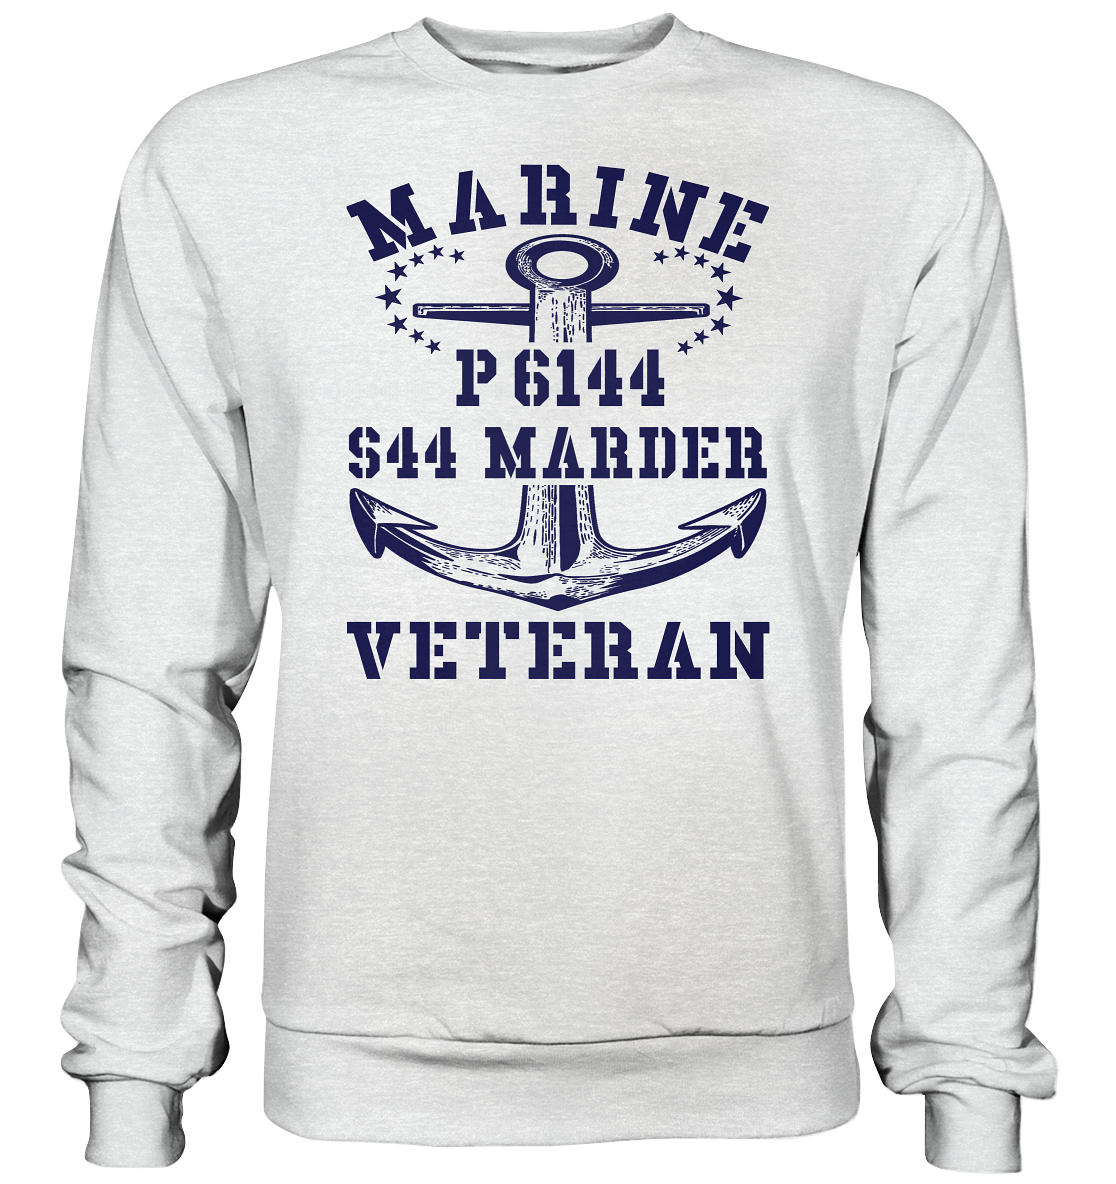 P6144 S44 MARDER Marine Veteran - Premium Sweatshirt